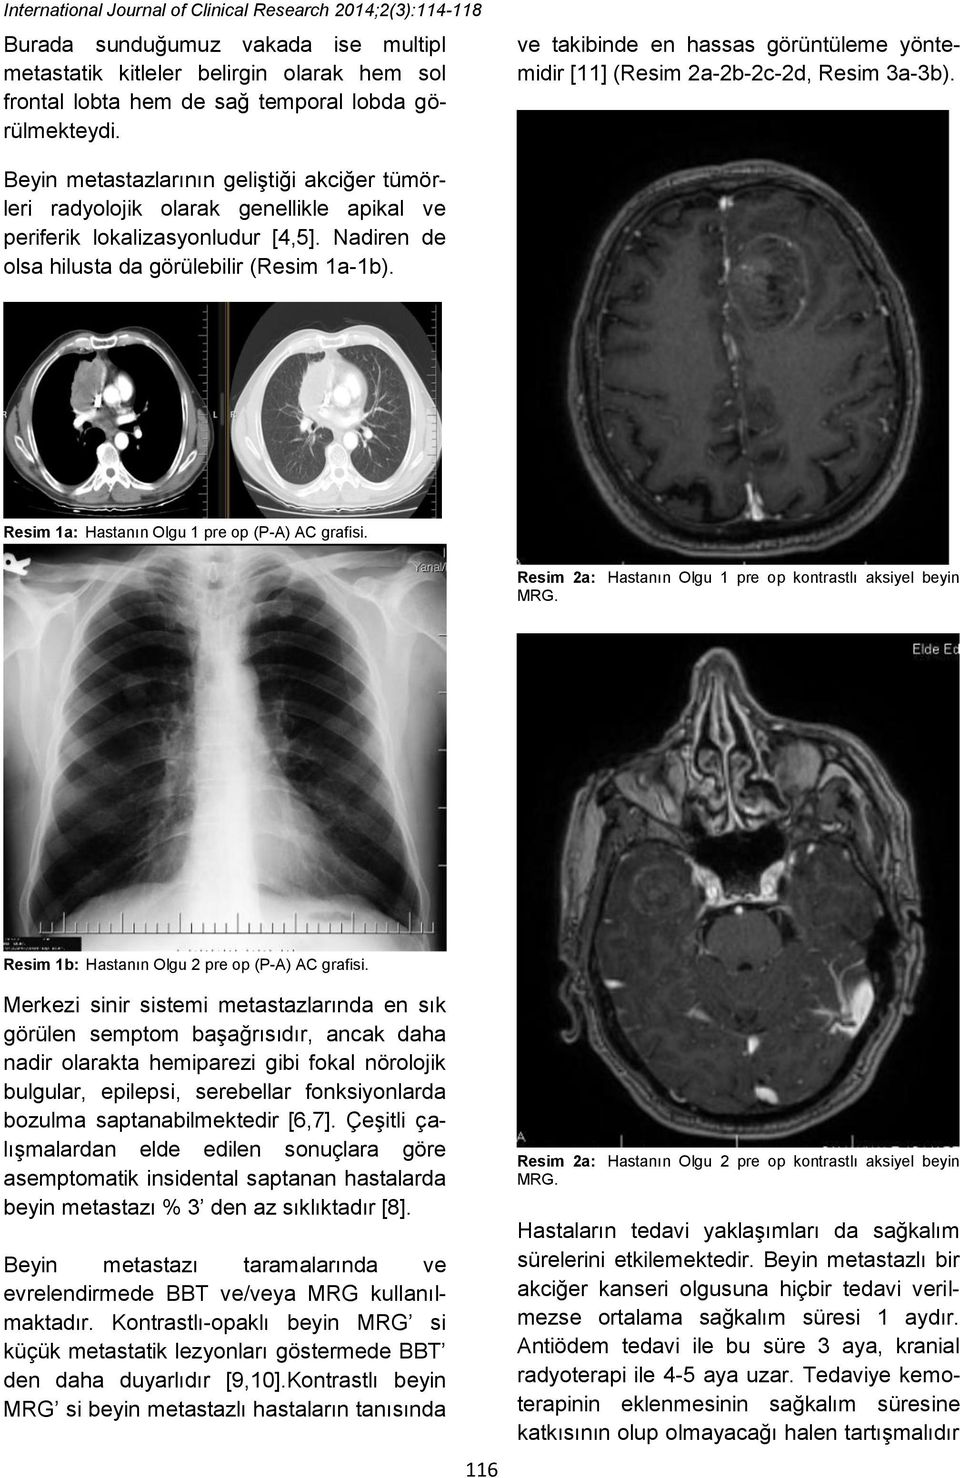 Beyin metastazlarının geliştiği akciğer tümörleri radyolojik olarak genellikle apikal ve periferik lokalizasyonludur [4,5]. Nadiren de olsa hilusta da görülebilir (Resim 1a-1b).